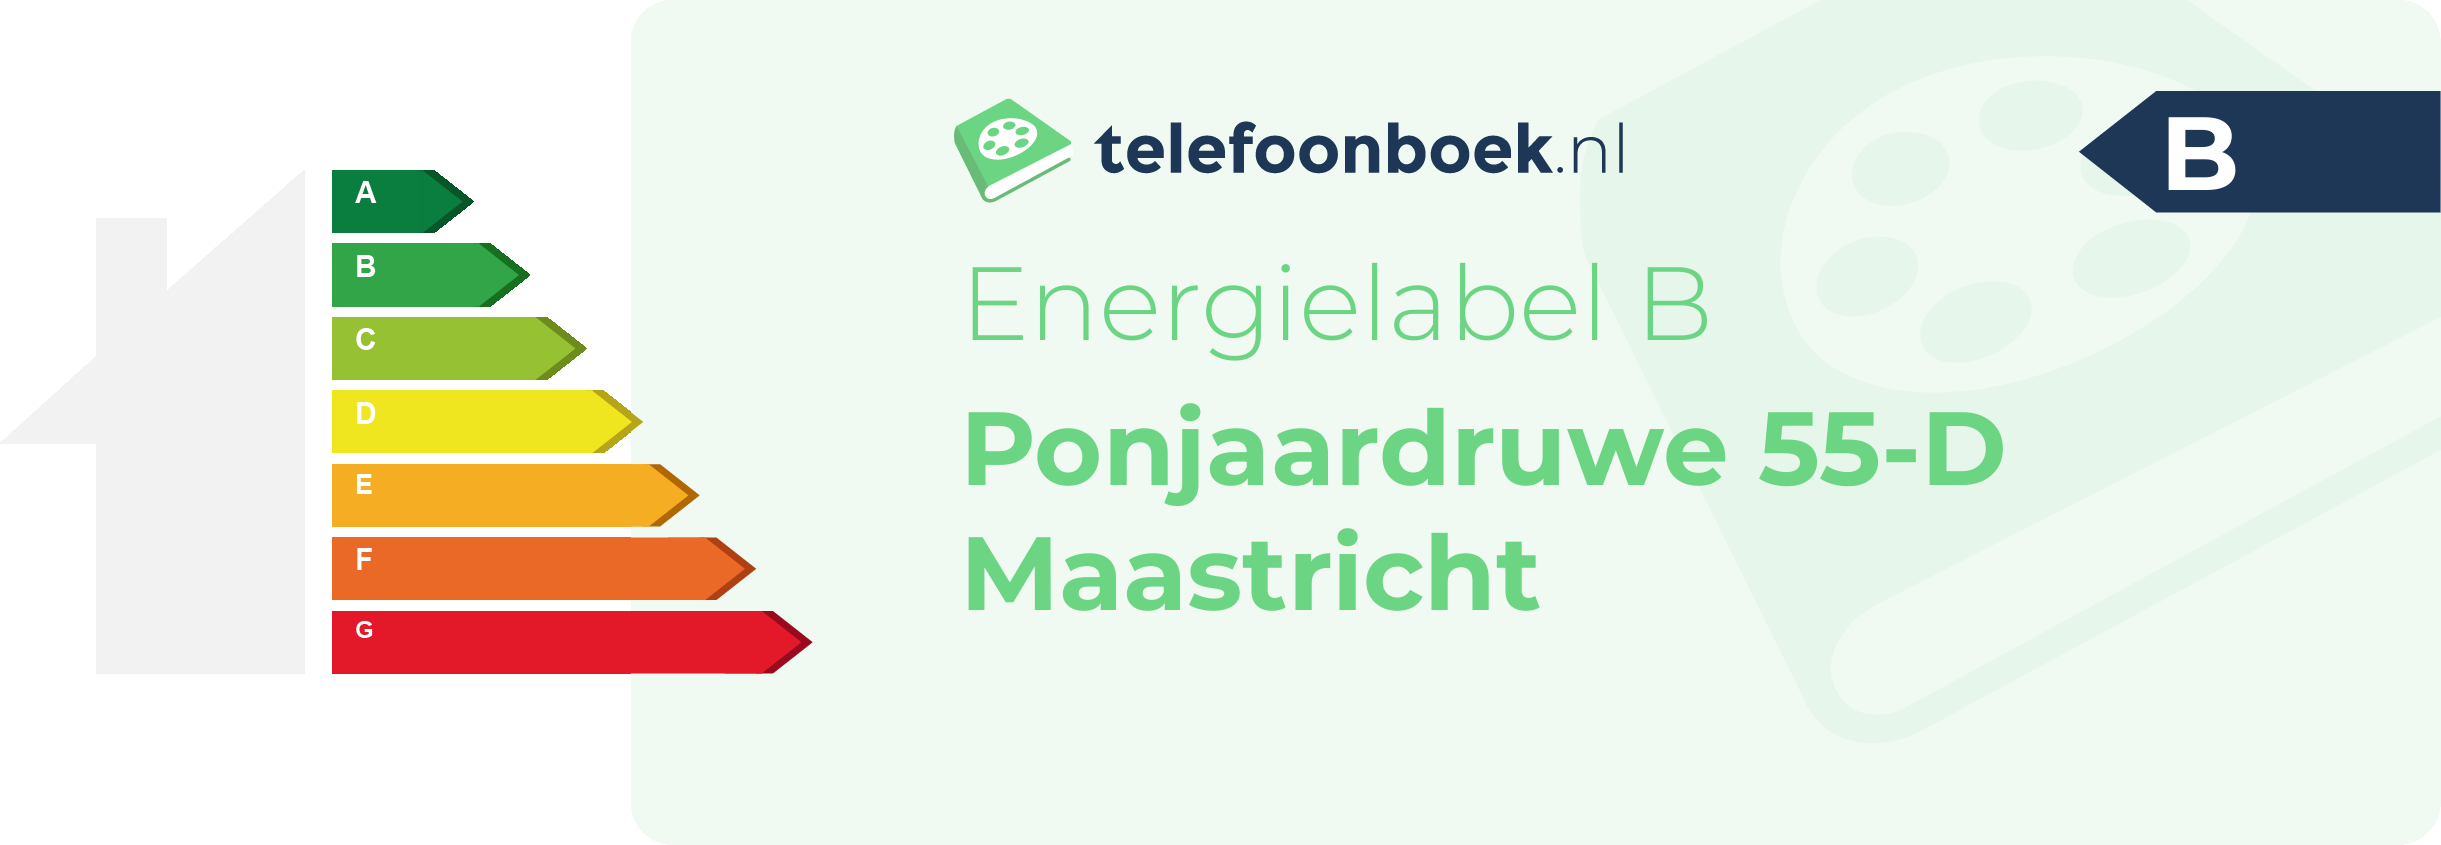 Energielabel Ponjaardruwe 55-D Maastricht